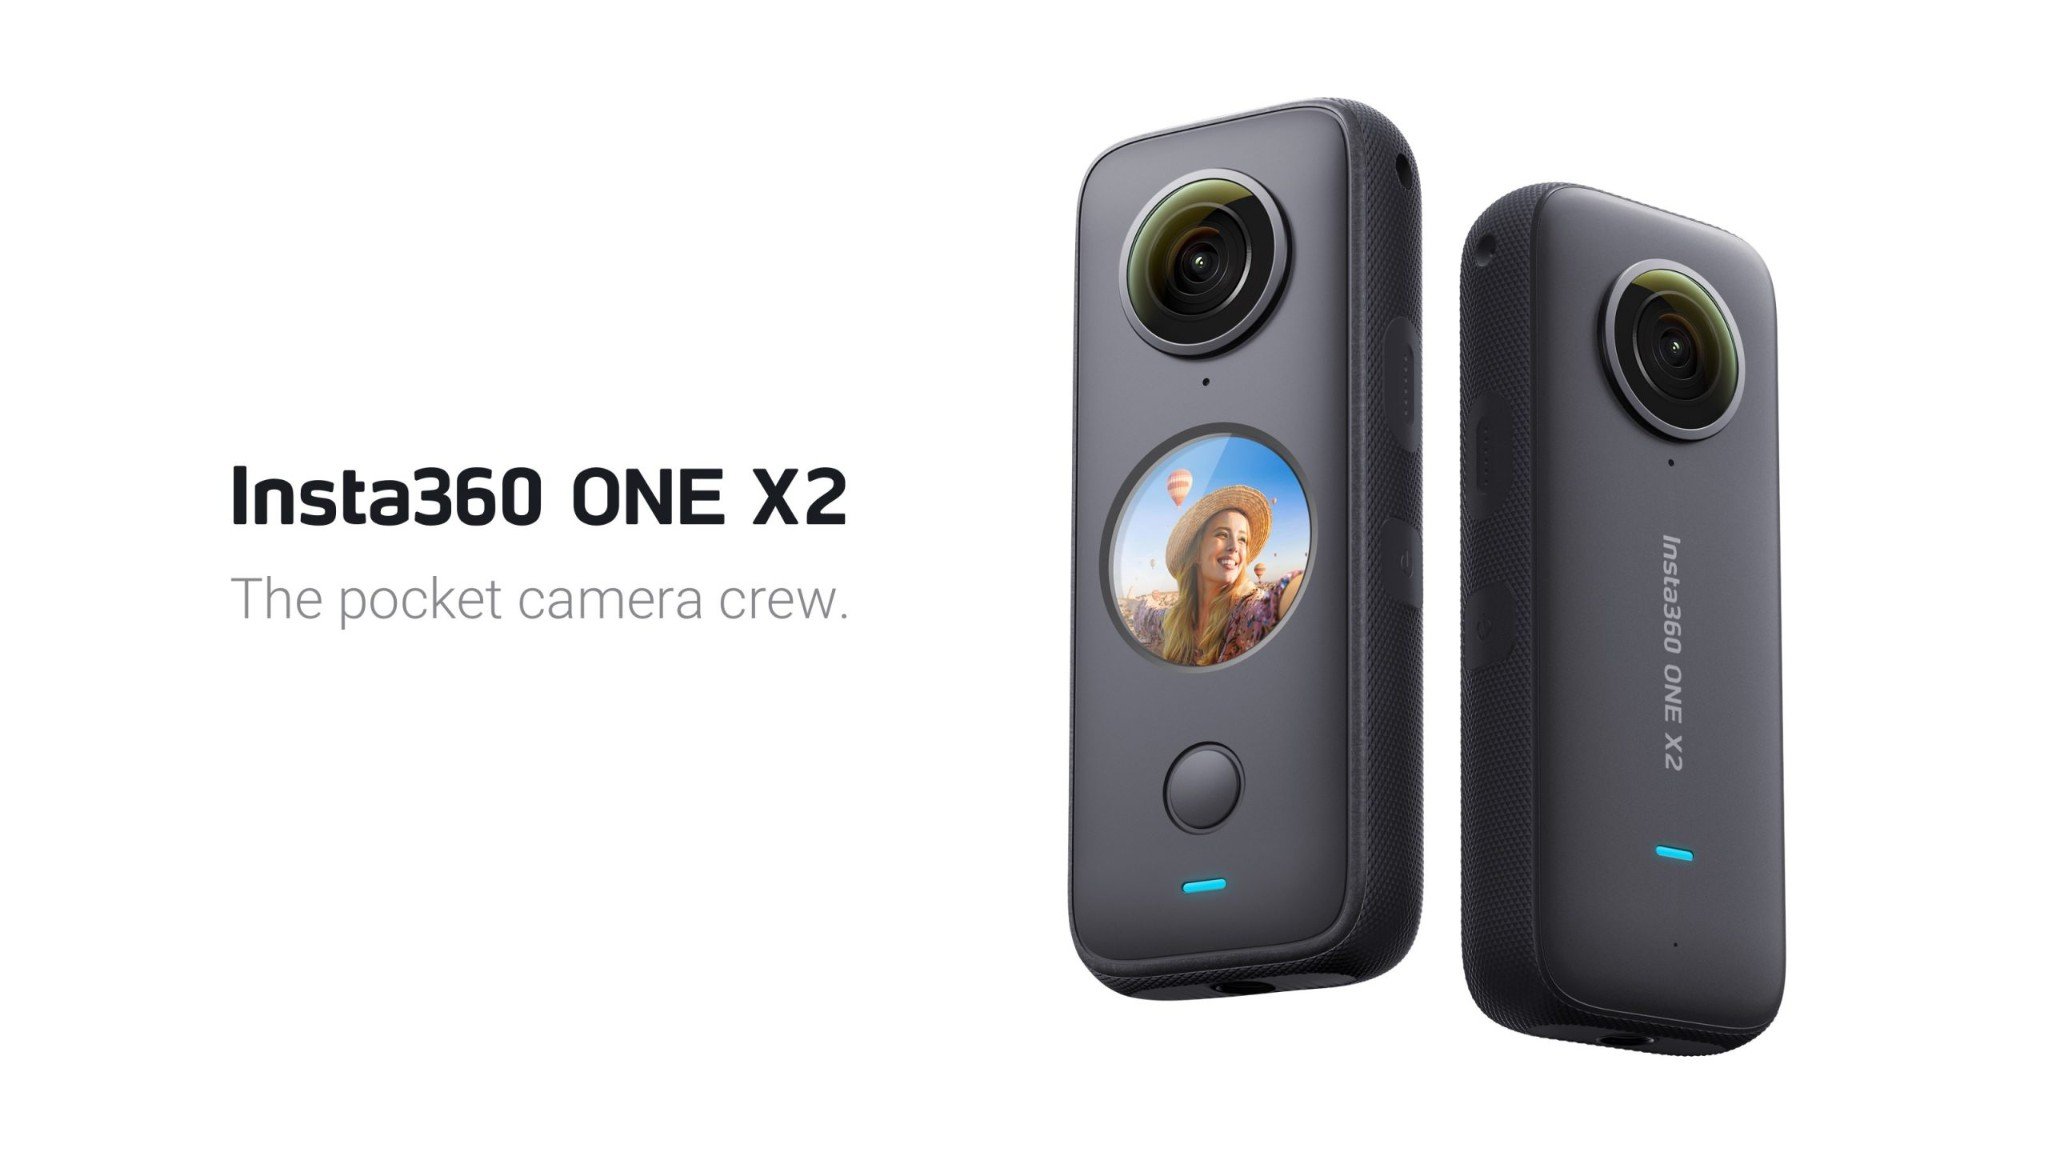 Insta360 ra mắt ONE X2, camera 360 độ nhỏ gọn quay video 5.7K tích hợp chống rung hình ảnh